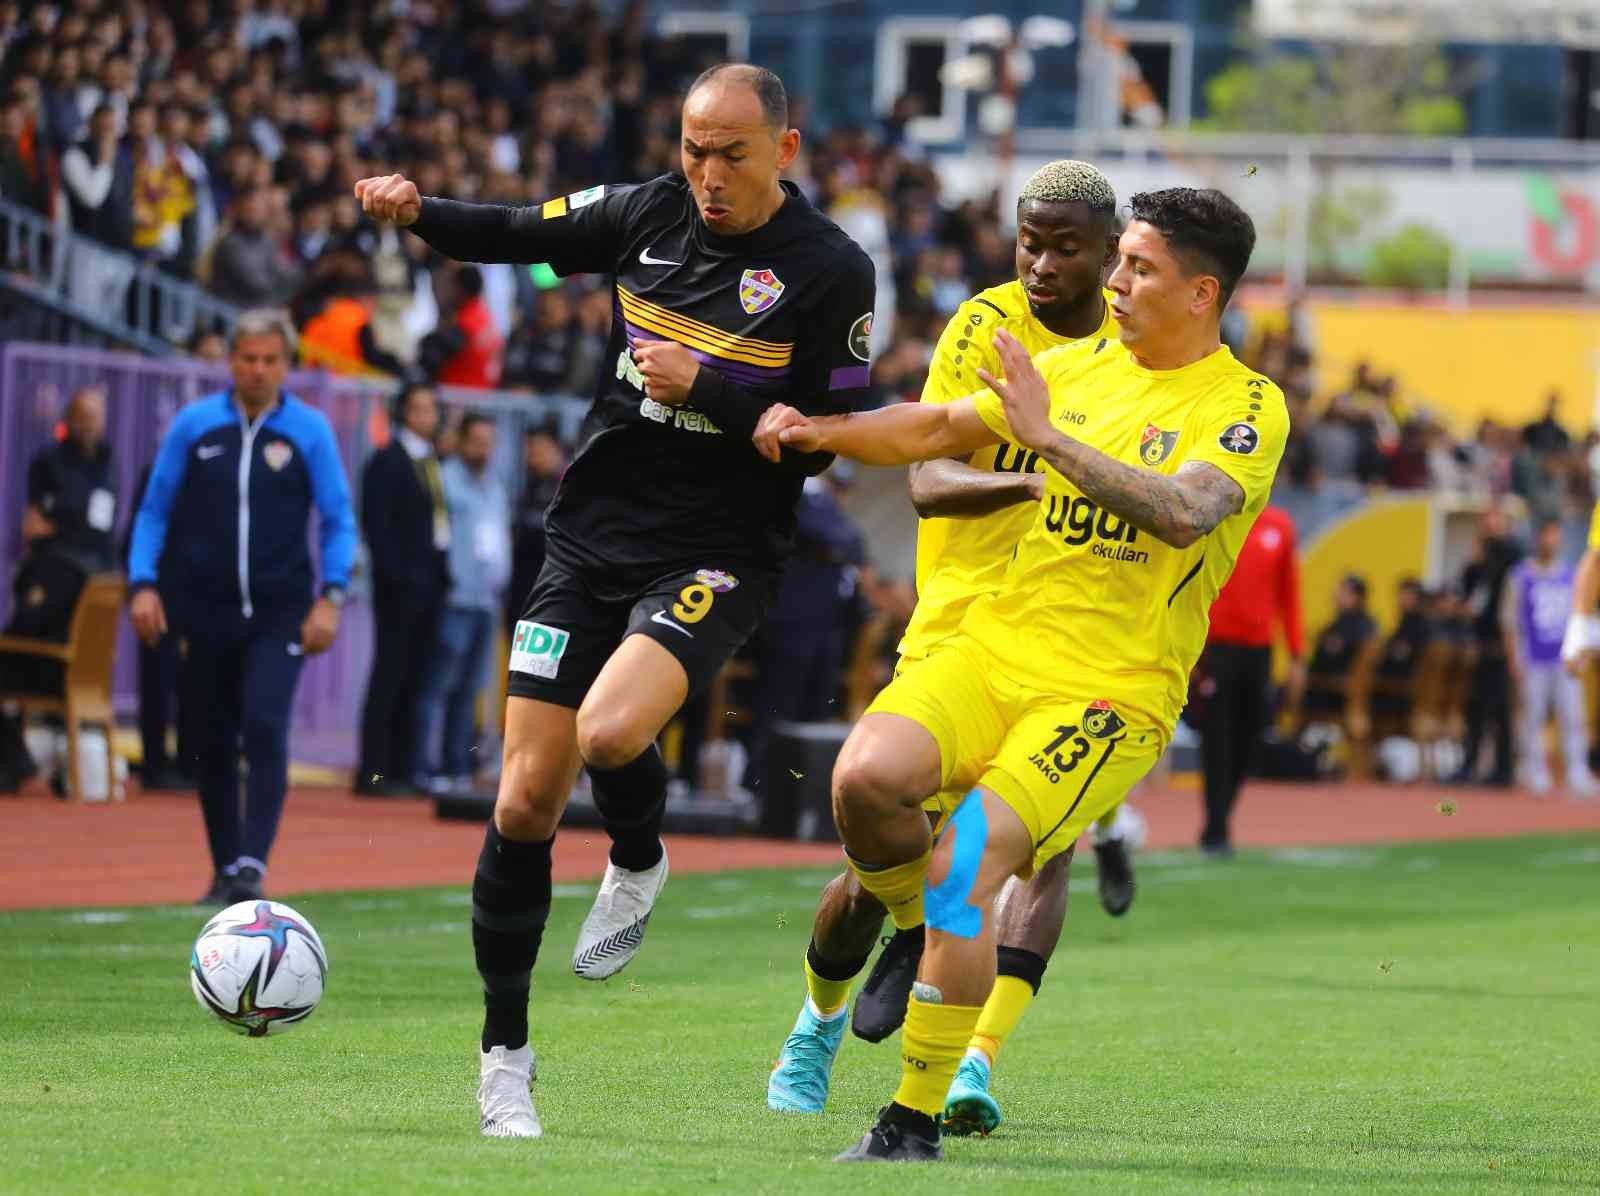 Spor Toto 1. Lig’in 35. haftasında Eyüpspor, sahasında karşılaştığı İstanbulspor’a 2-1’lik skorla mağlup oldu. Maçtan dakikalar 7. dakikada ...